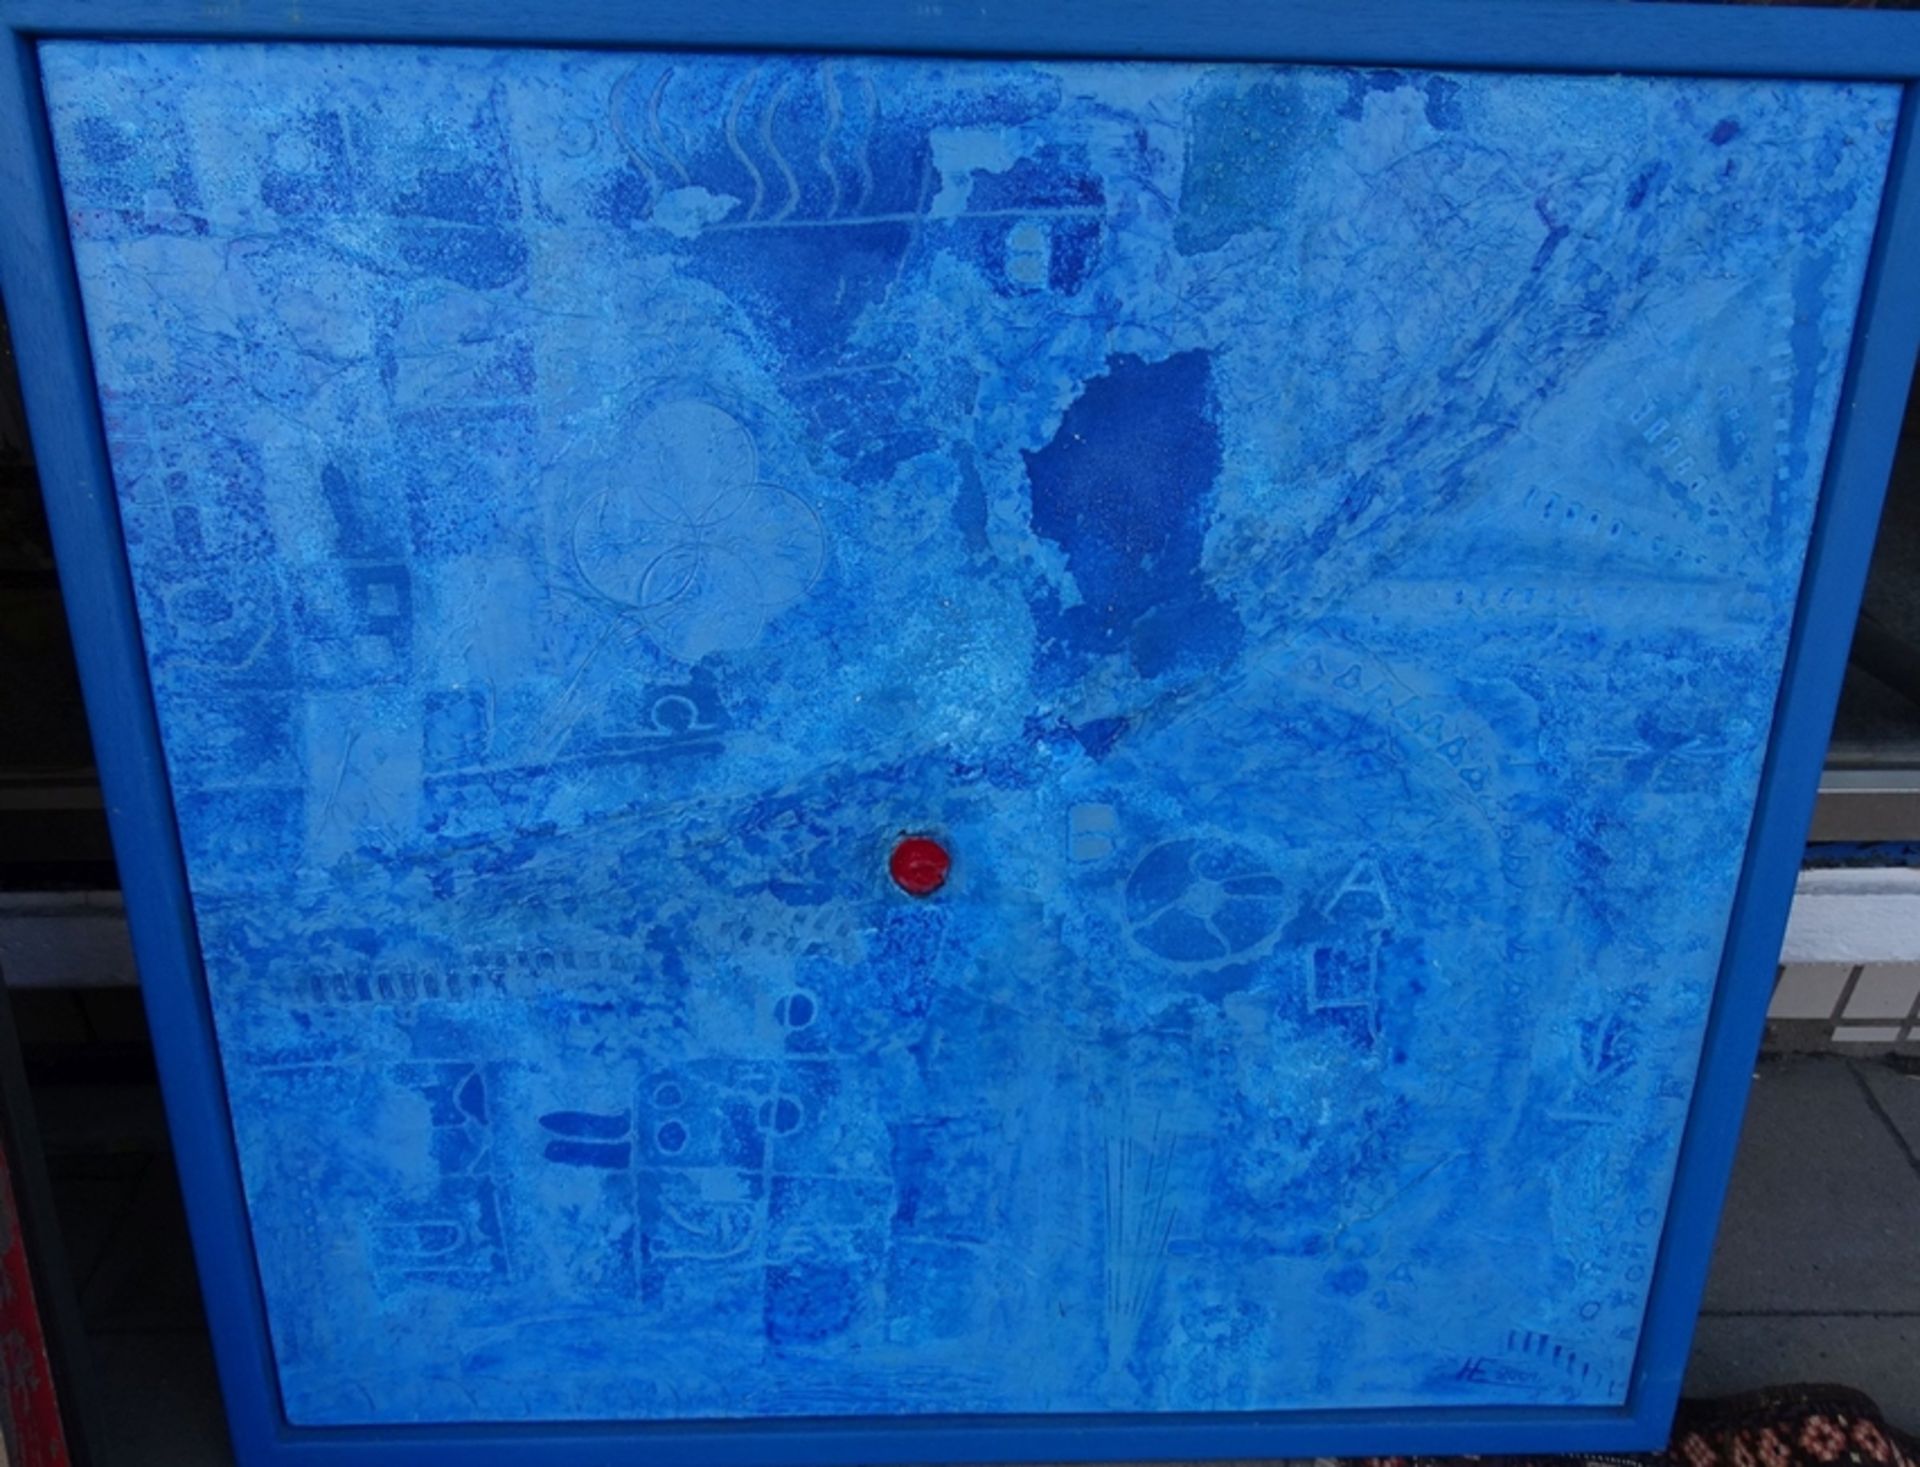 unleserl. verso signiert "Composition blau", vorne Monogramm, 109x110 cm, Öl/Platte, gerahmt - Bild 3 aus 6